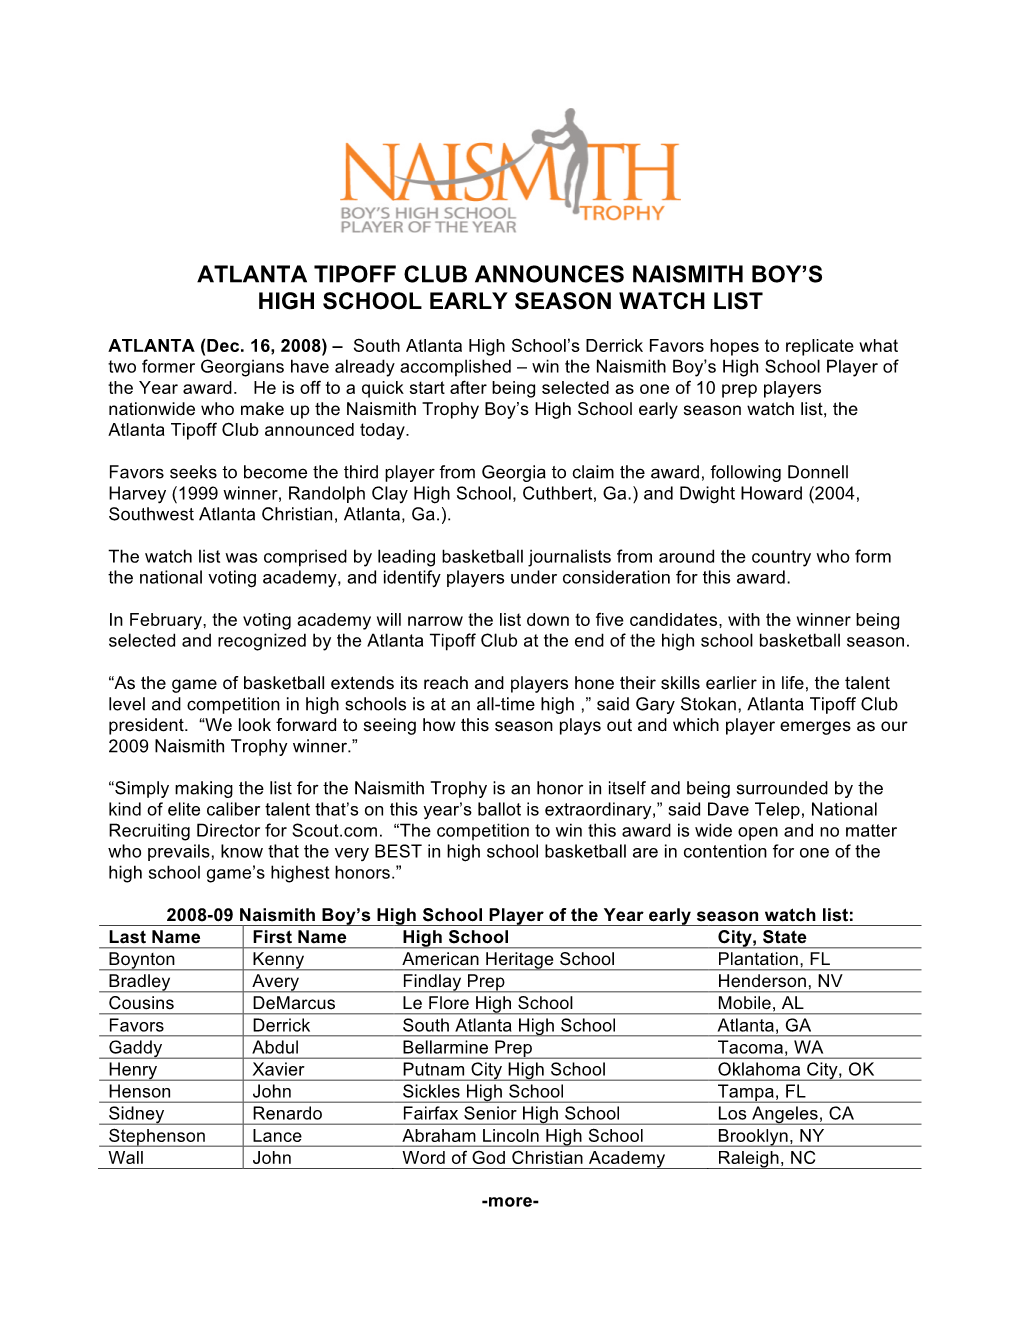 Atlanta Tipoff Club Announces Naismith Boy’S High School Early Season Watch List